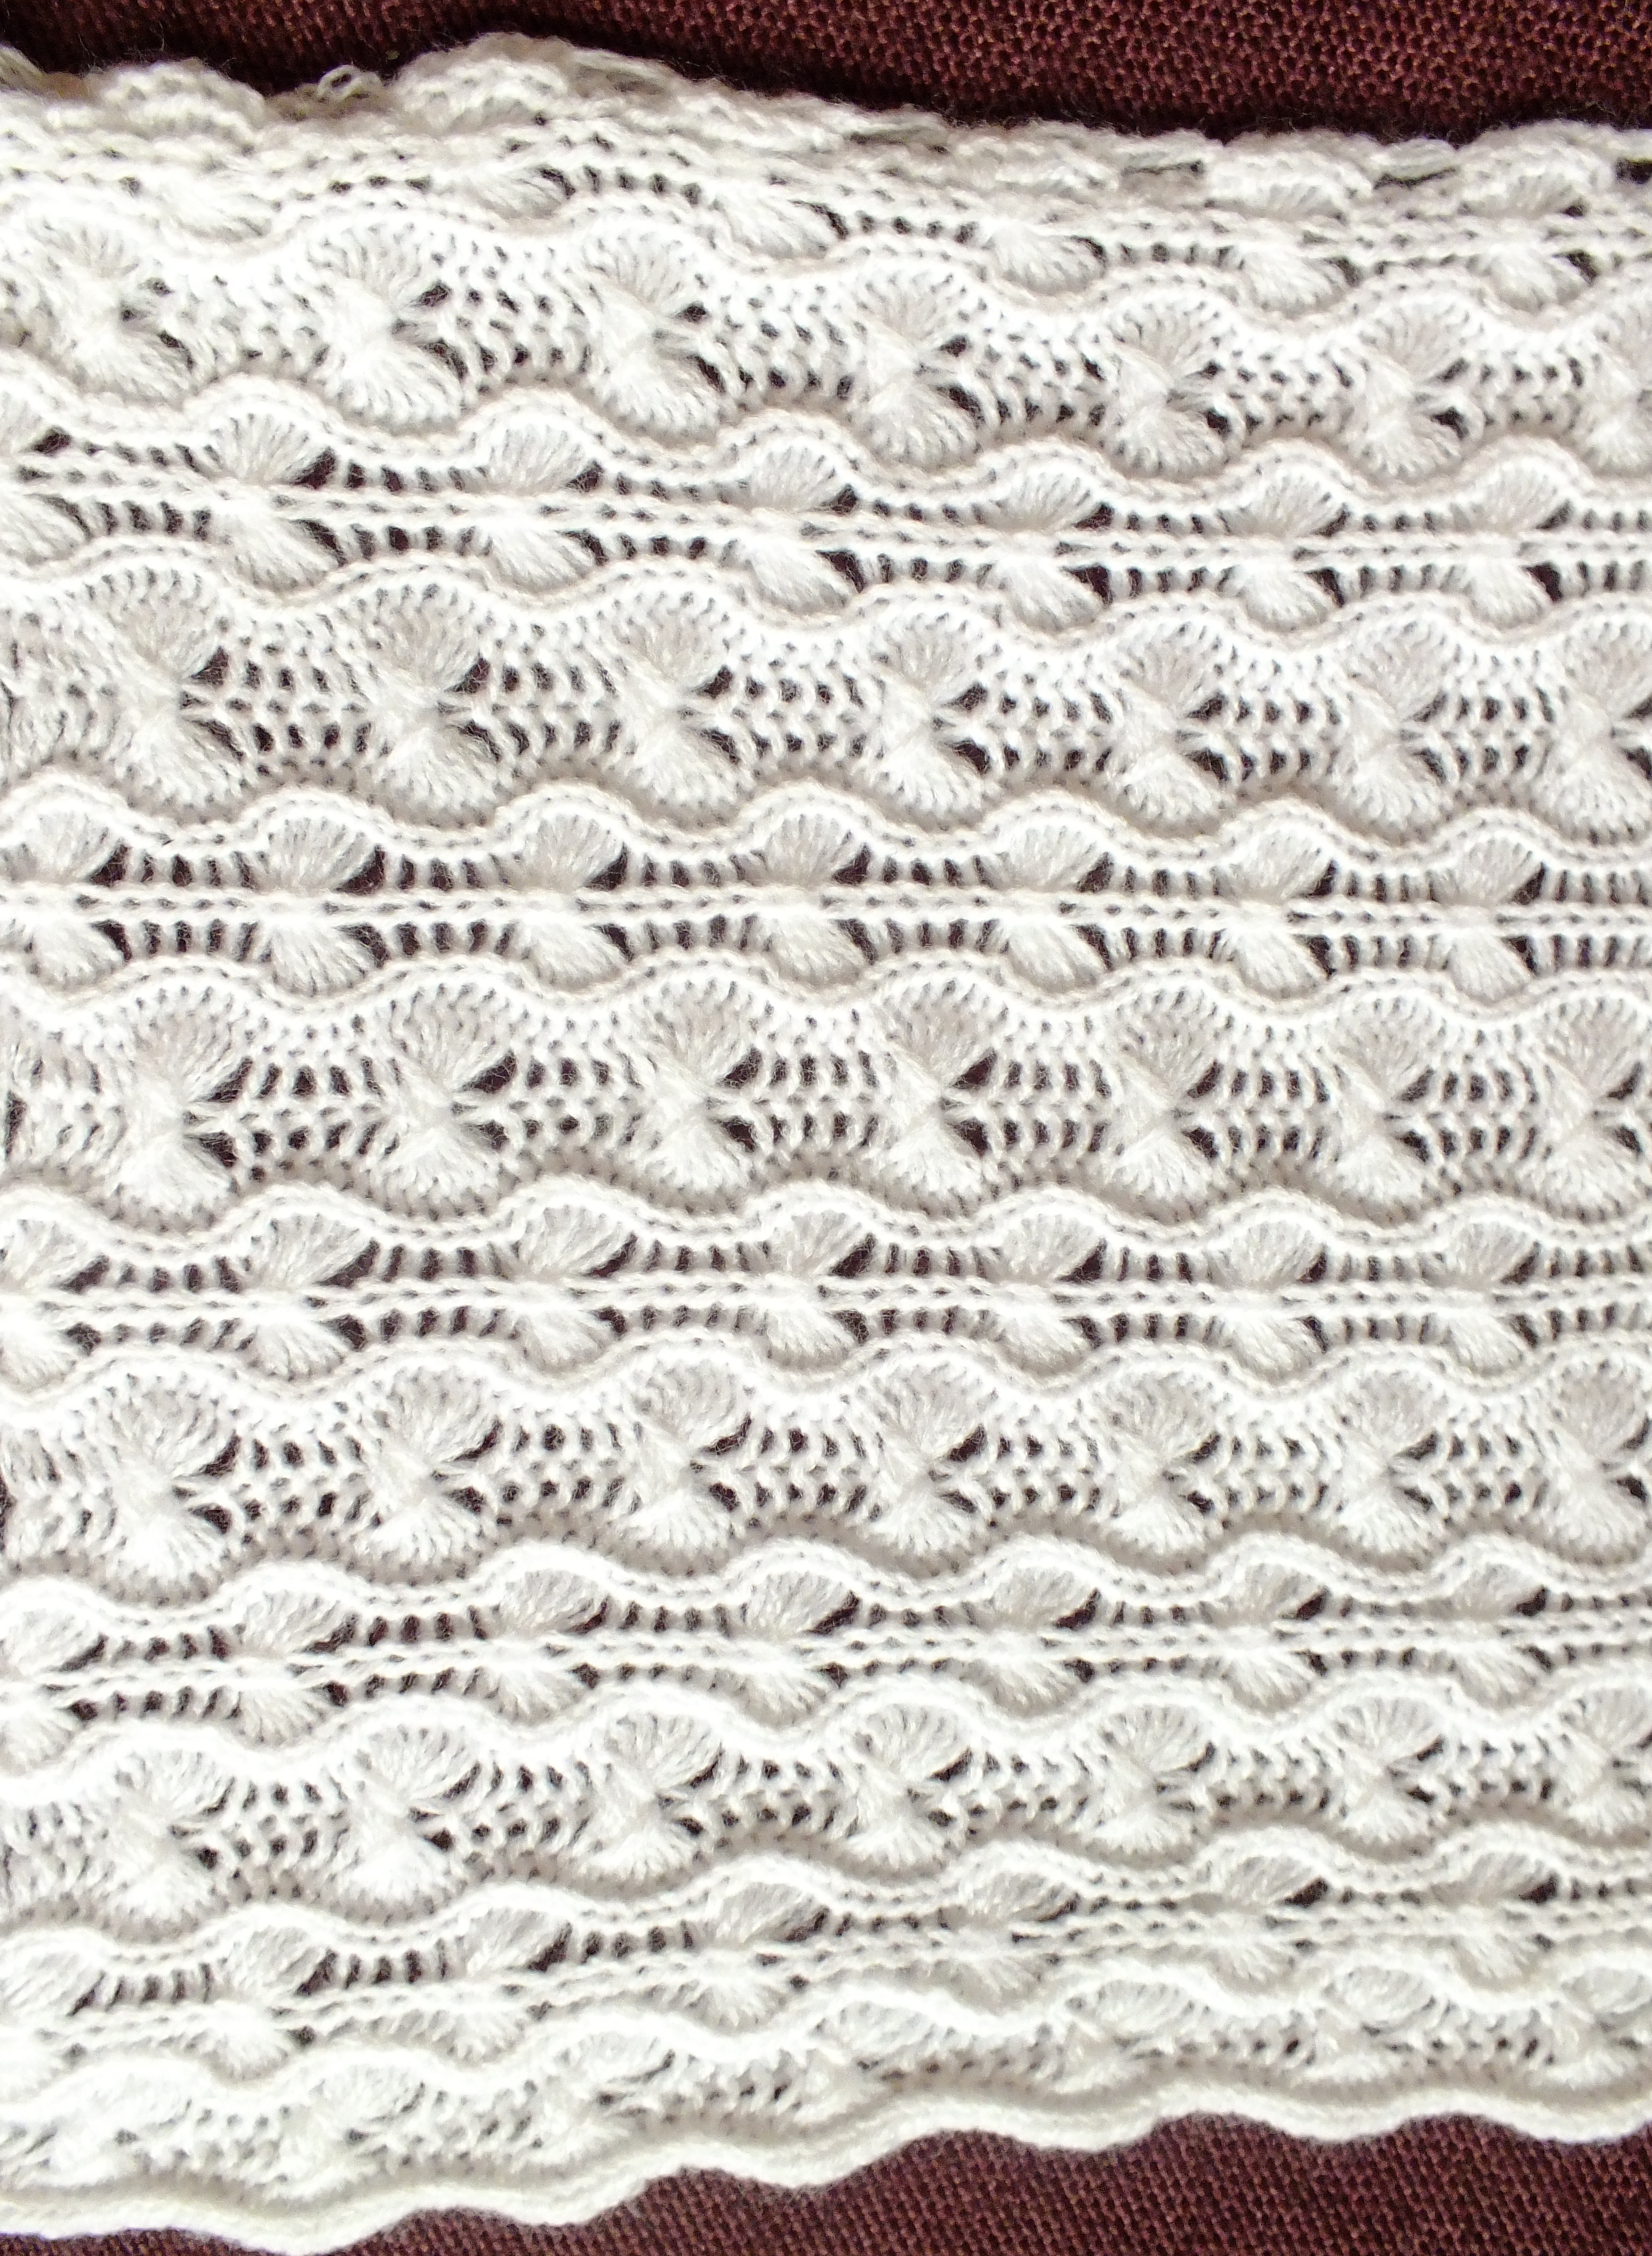 Passap Knitting Machine Patterns Gossamer Tuck Lace Shawl Scarf On The Passap E 6000